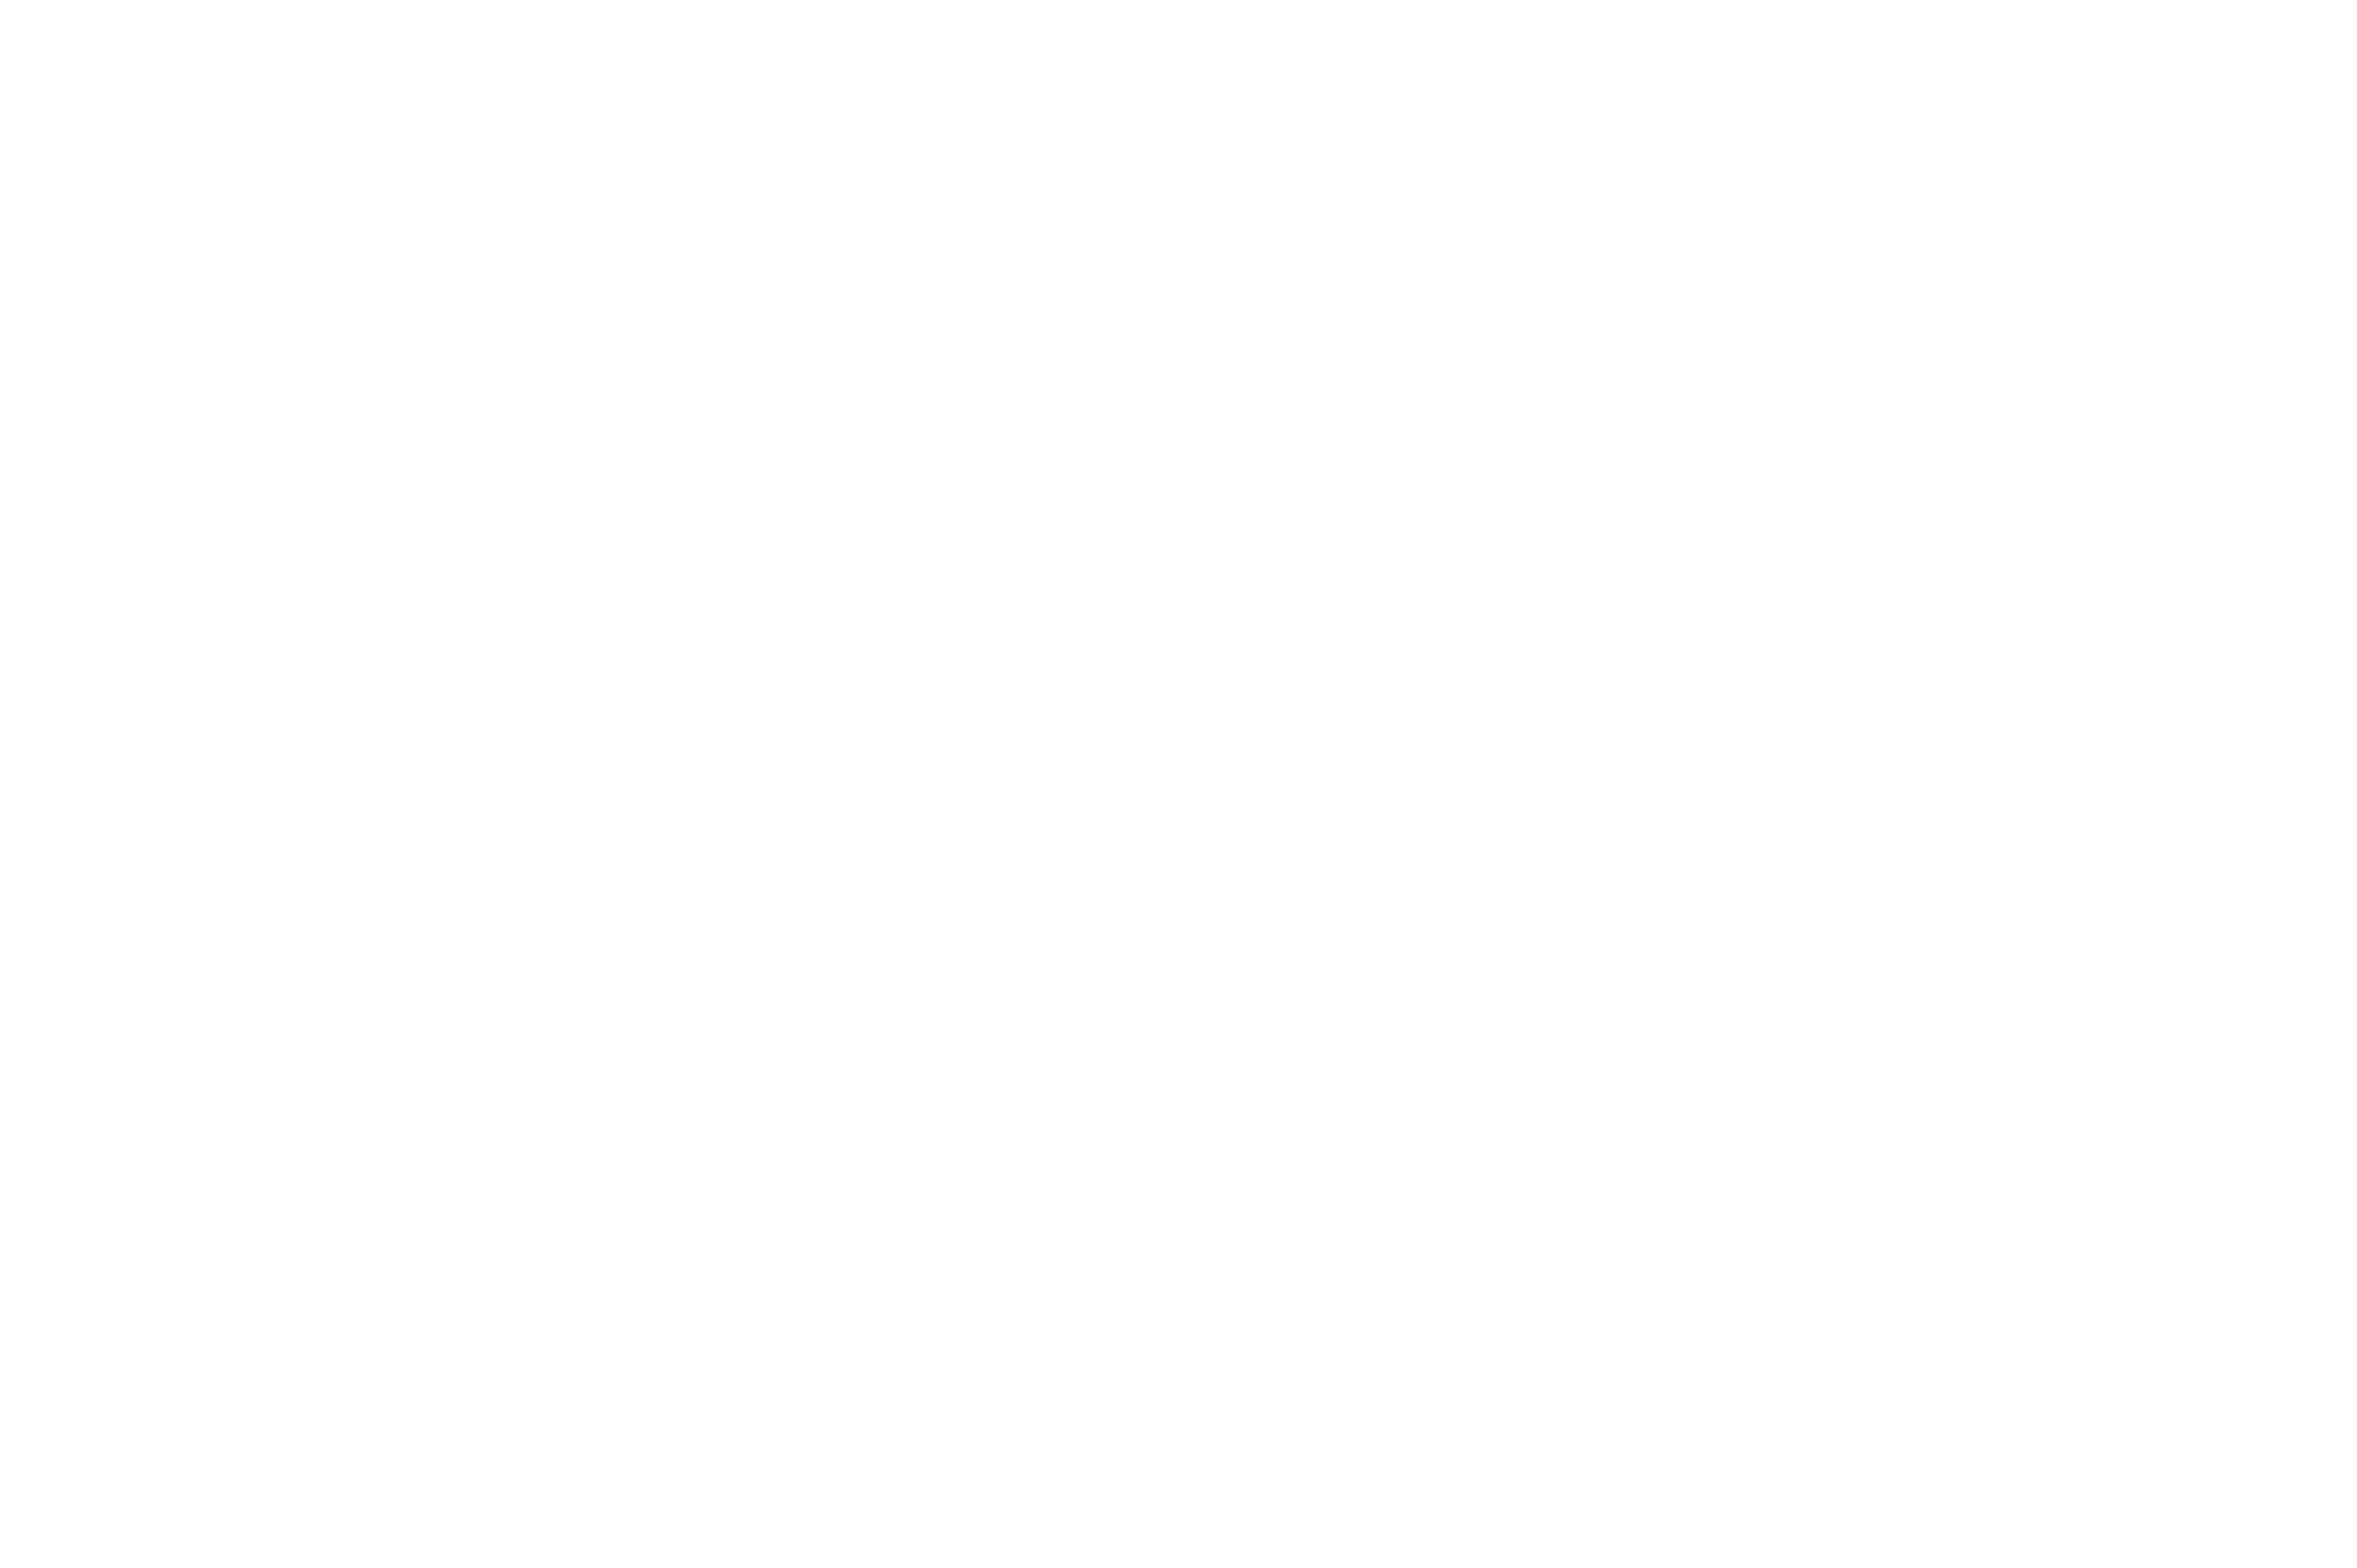 Let the 'Games' begin